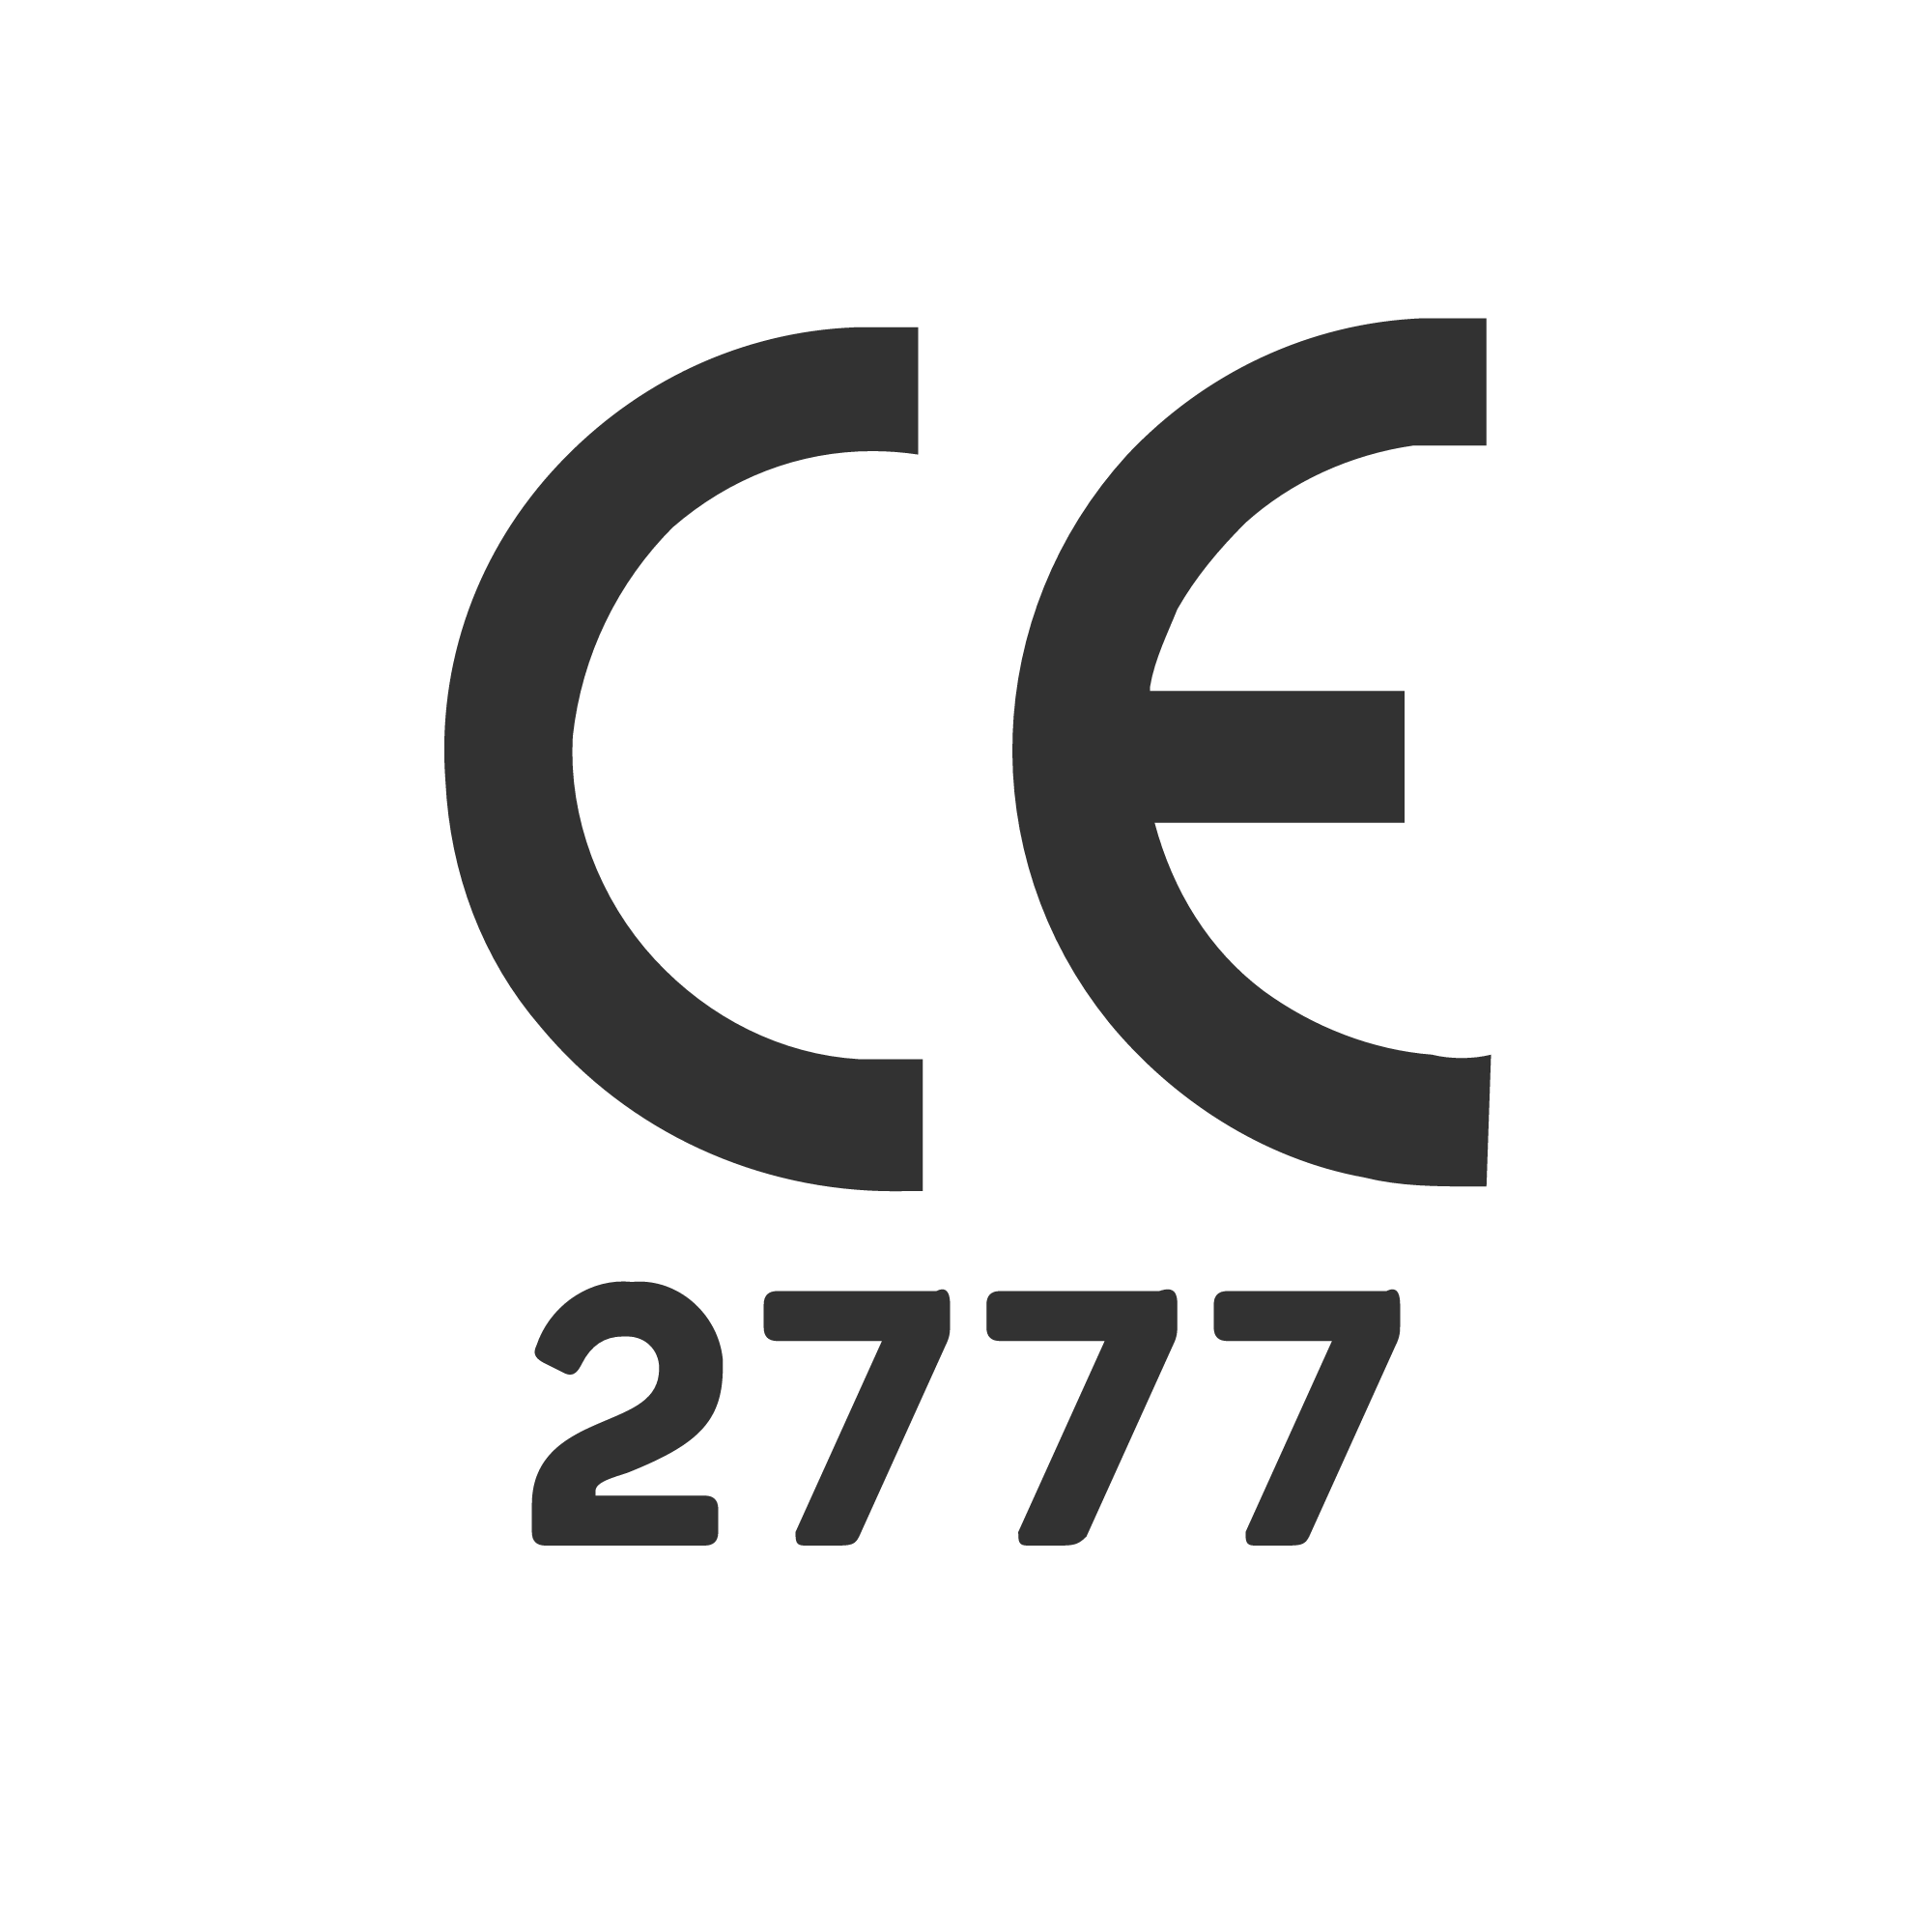 CE 2777